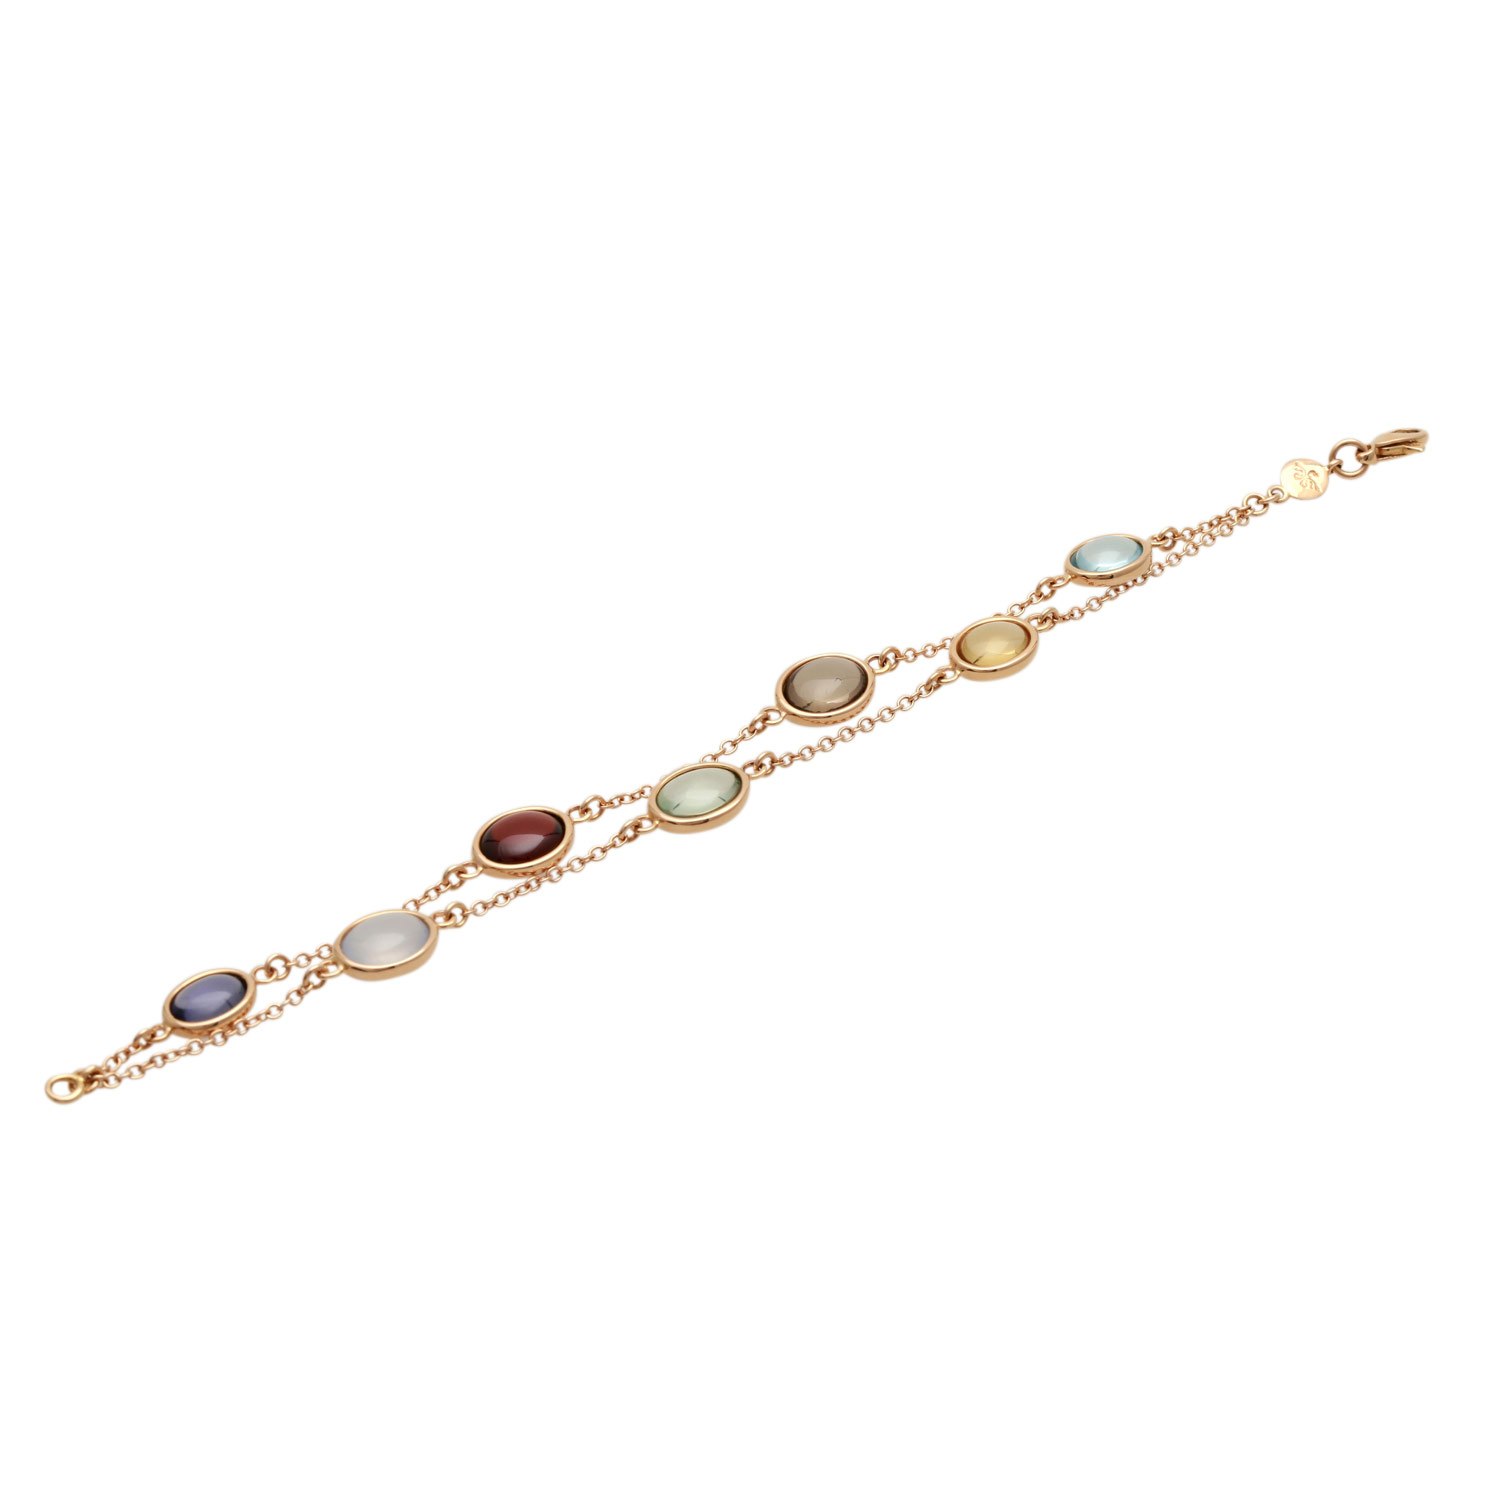 CAPOLAVORO doppelreihiges Armband mit Farbsteinenin verschiedenen Farben, feine Ankerkette in RG - Image 4 of 4